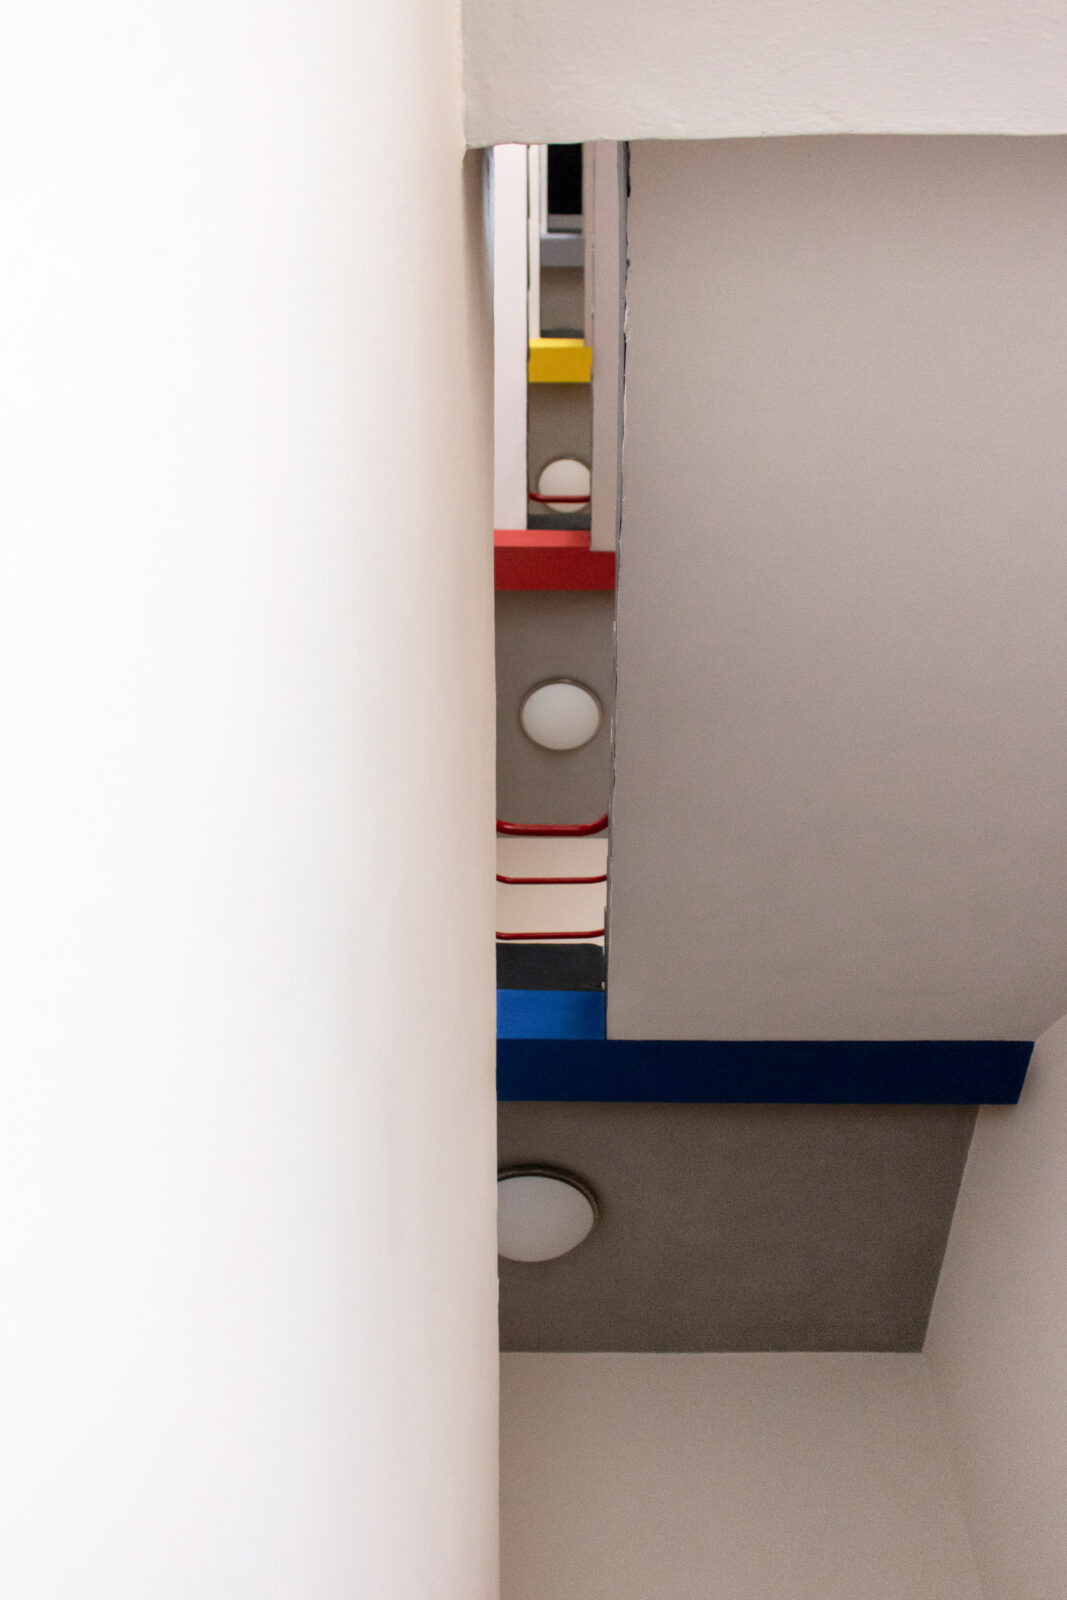 Blick im Treppenhaus des Ateliergebäudes von unten nach oben. Die verscheidenen Etagen grenzen sich durch die Farbenen Blau, Rot und Gelb voneinander ab.